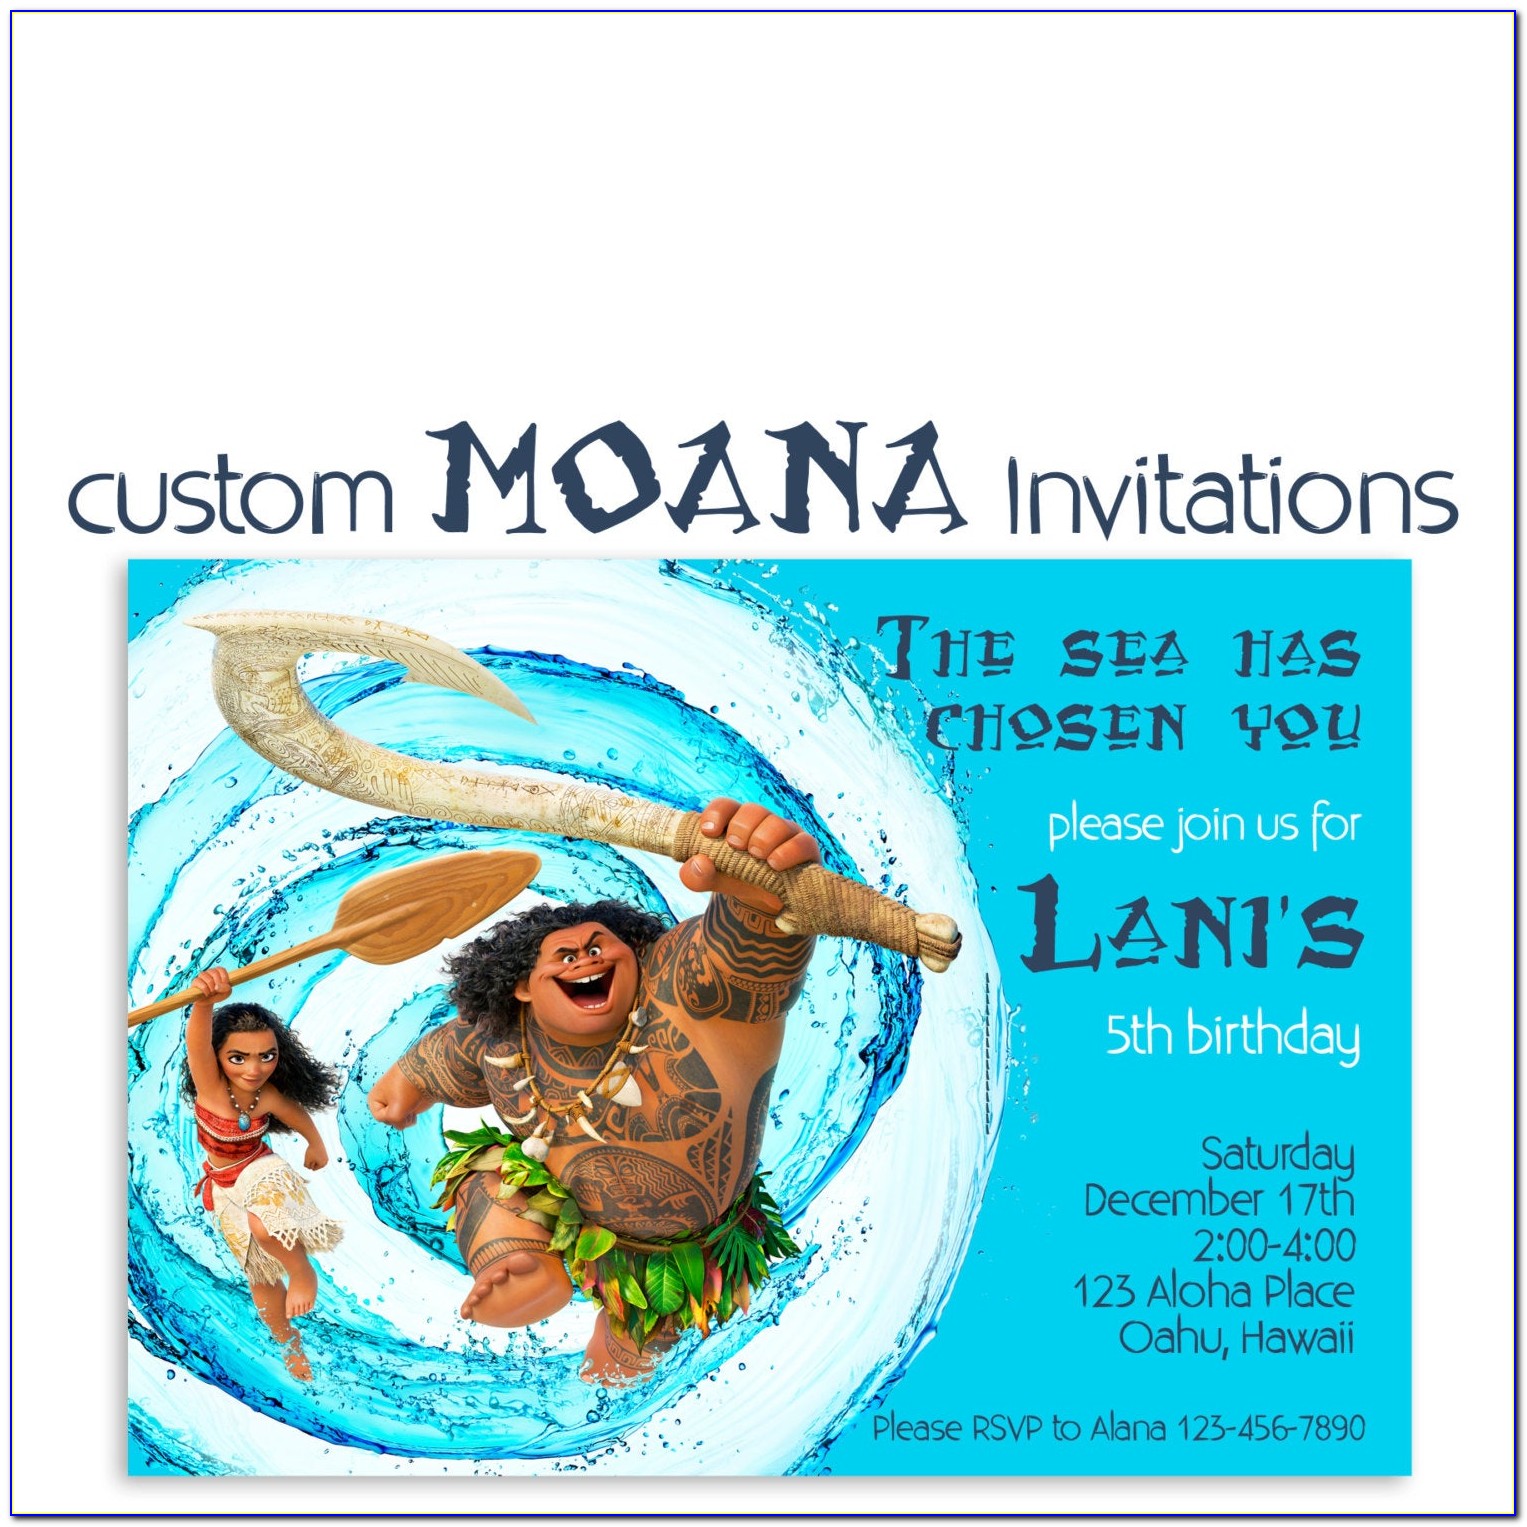 Moana Custom Invitations